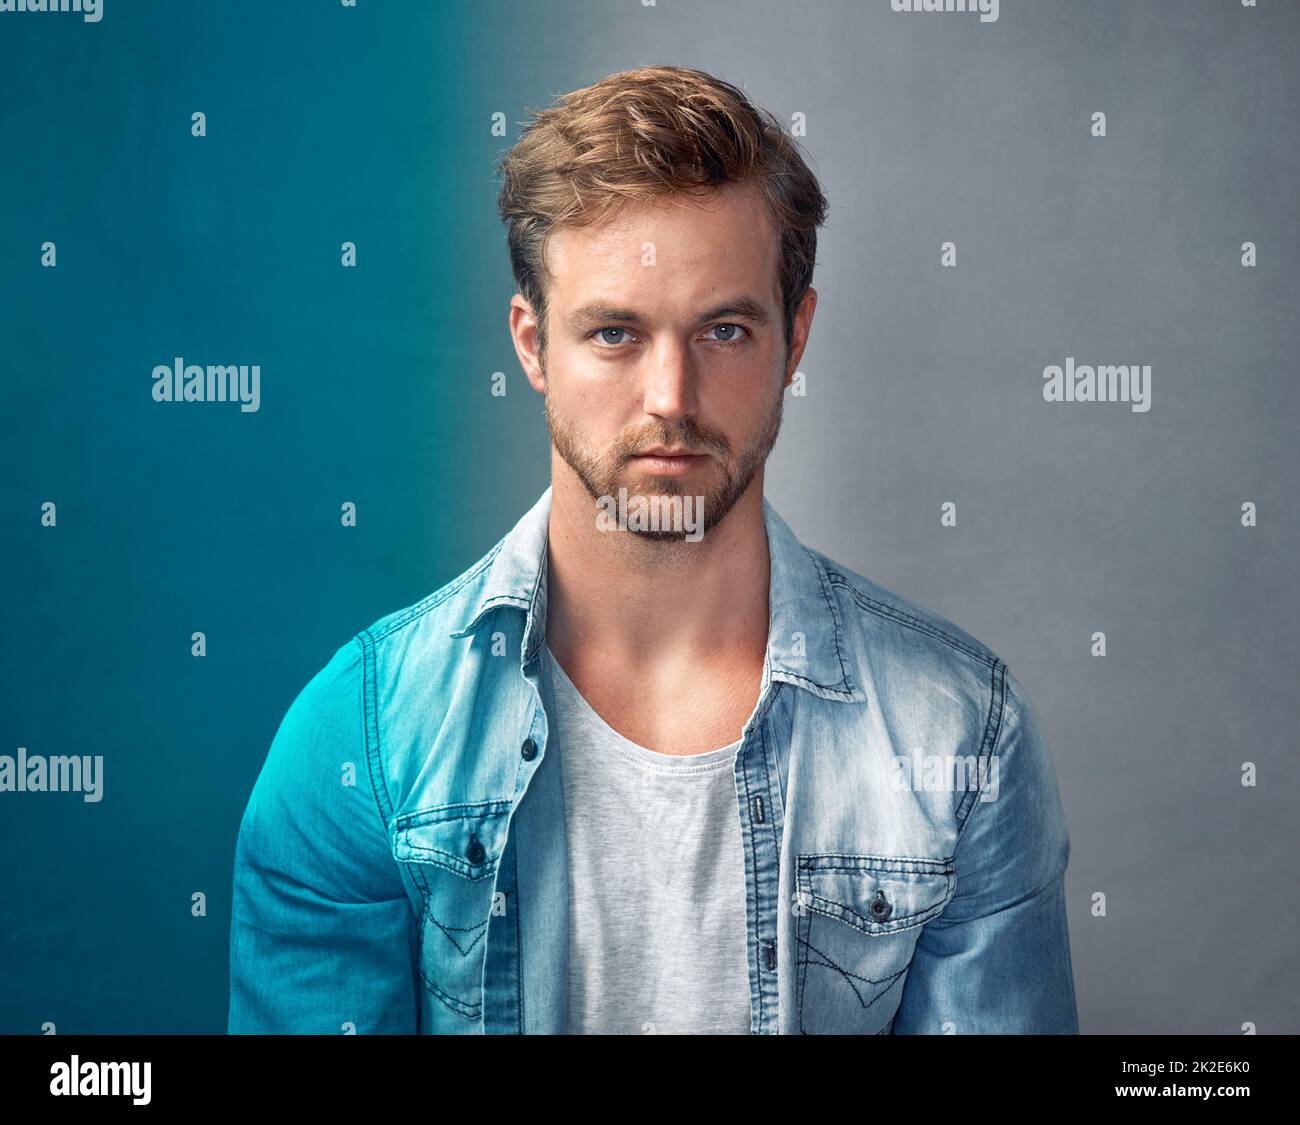 Vivete la vostra vita a colori. Ritratto di un bel giovane uomo con una sovrapposizione blu che si posa su uno sfondo grigio in studio. Foto Stock